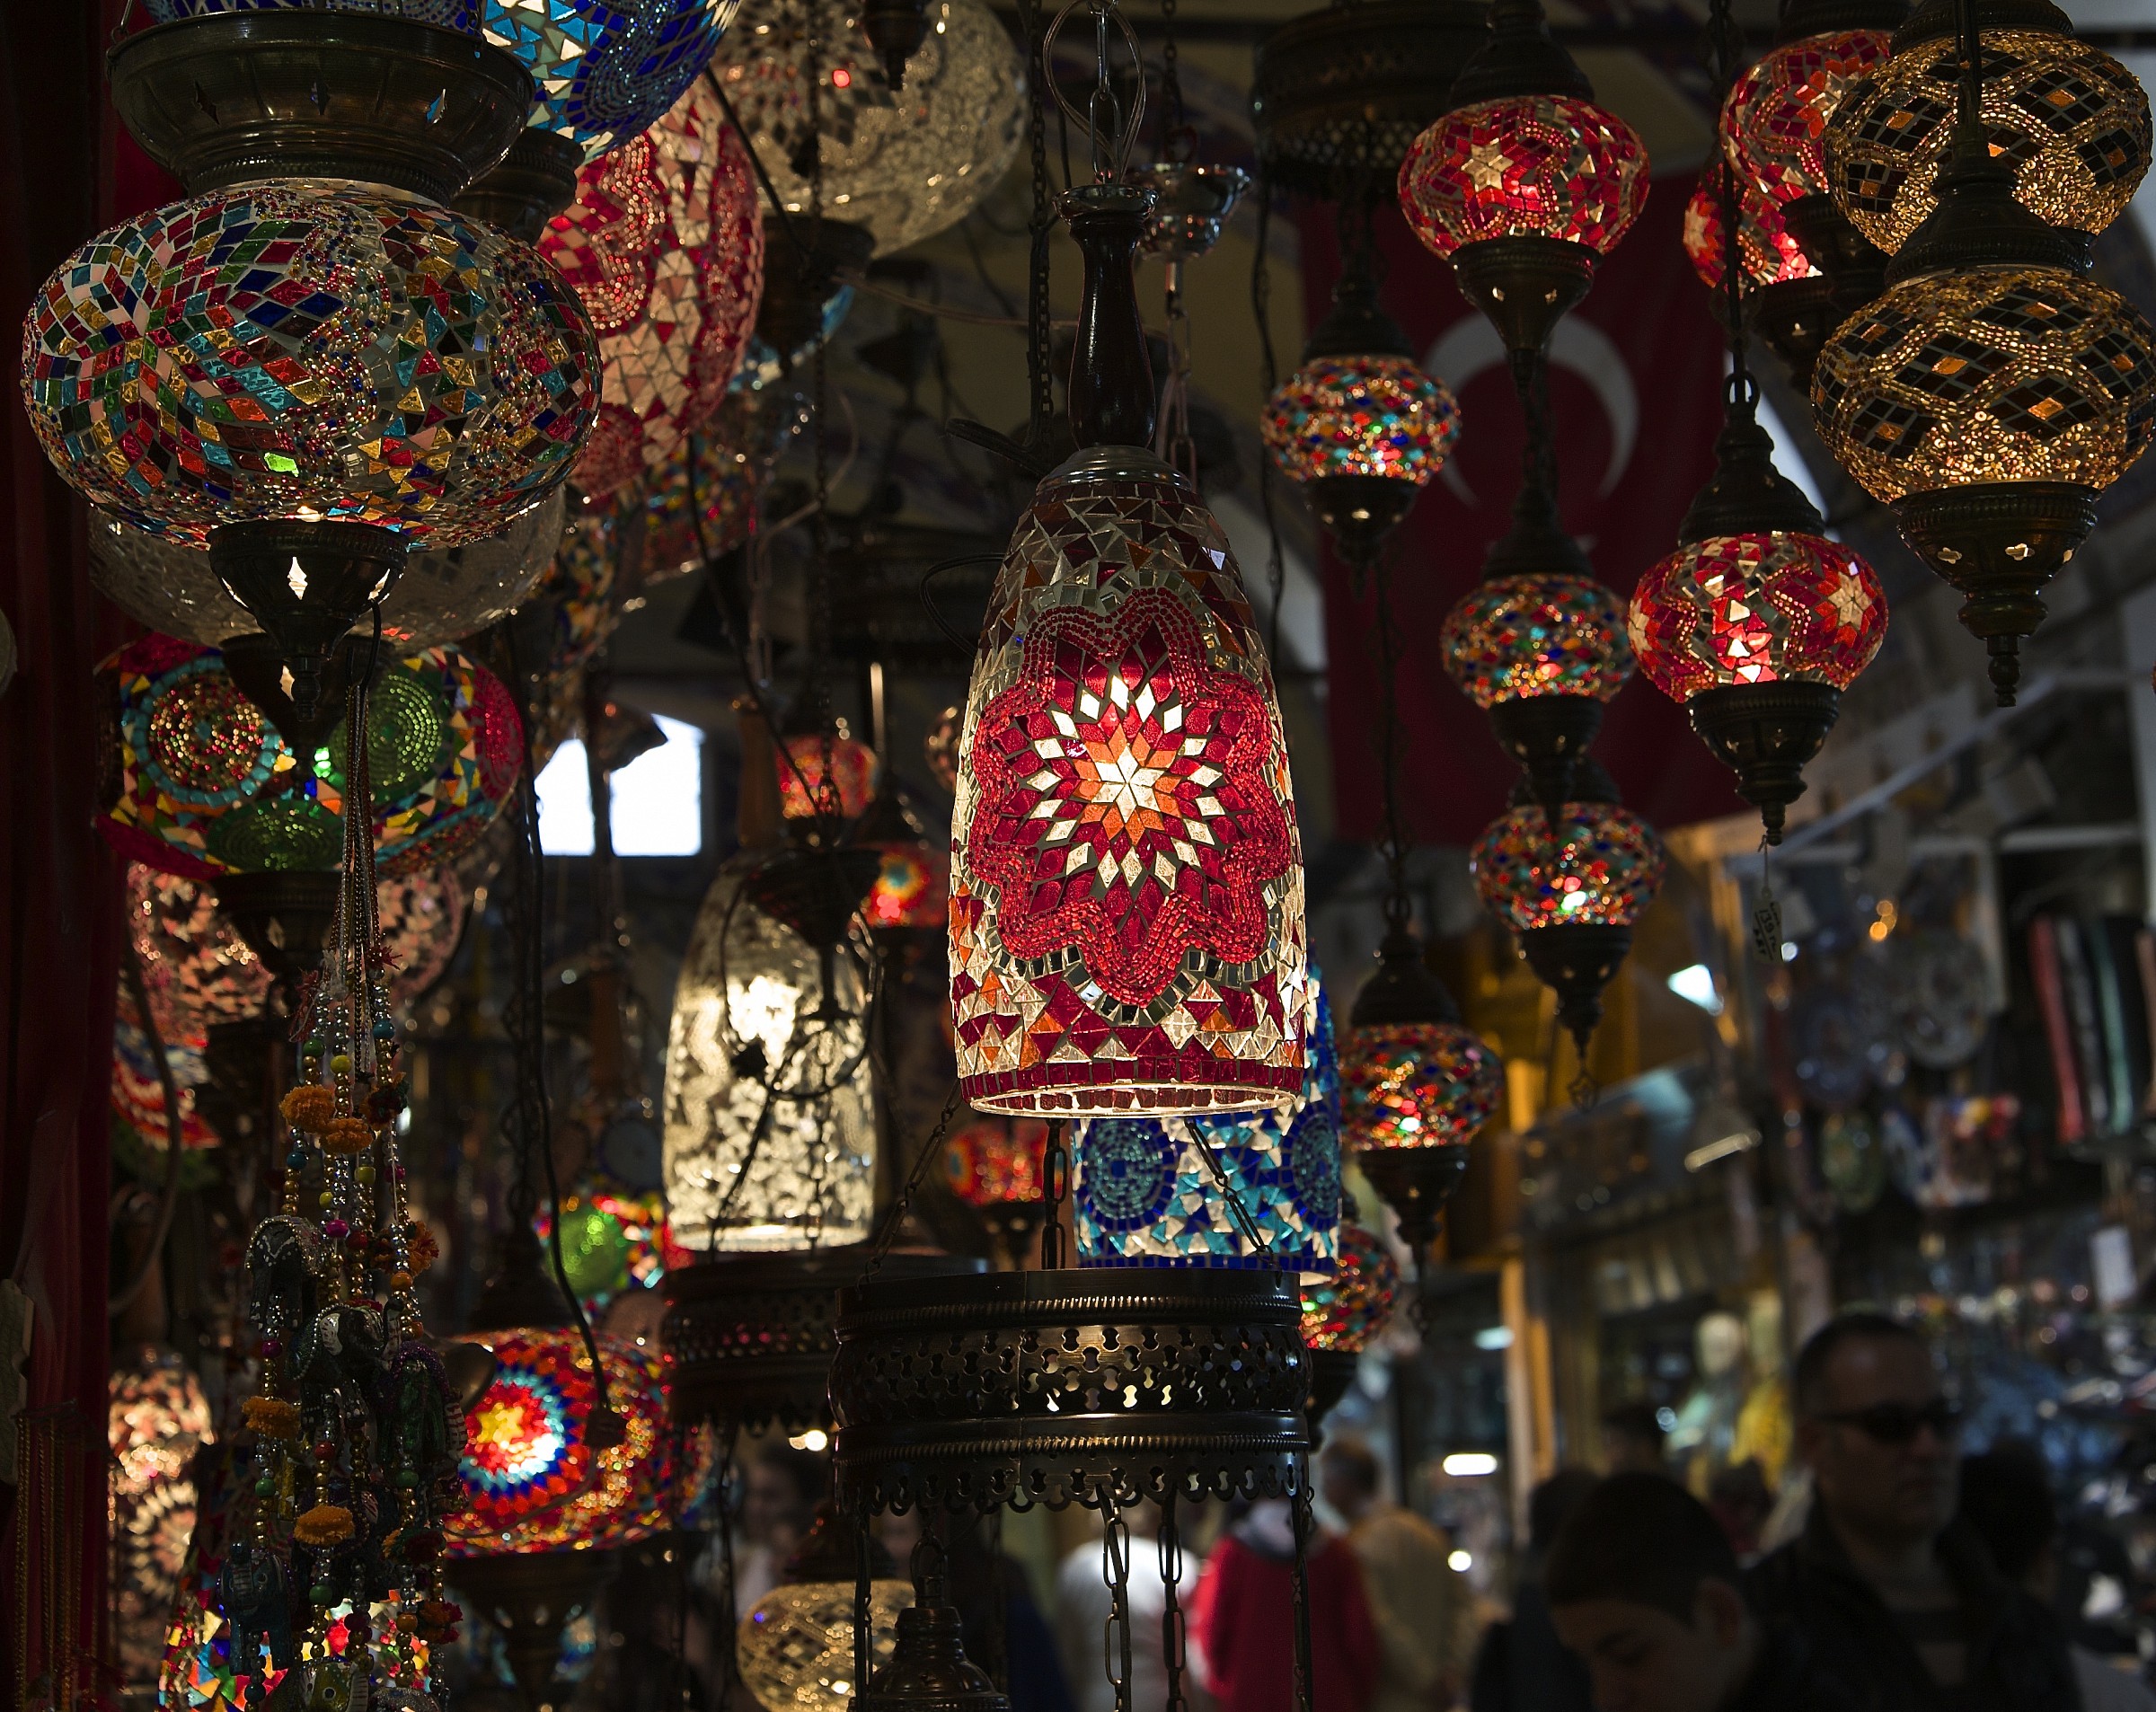 Dim lights in the bazaar...